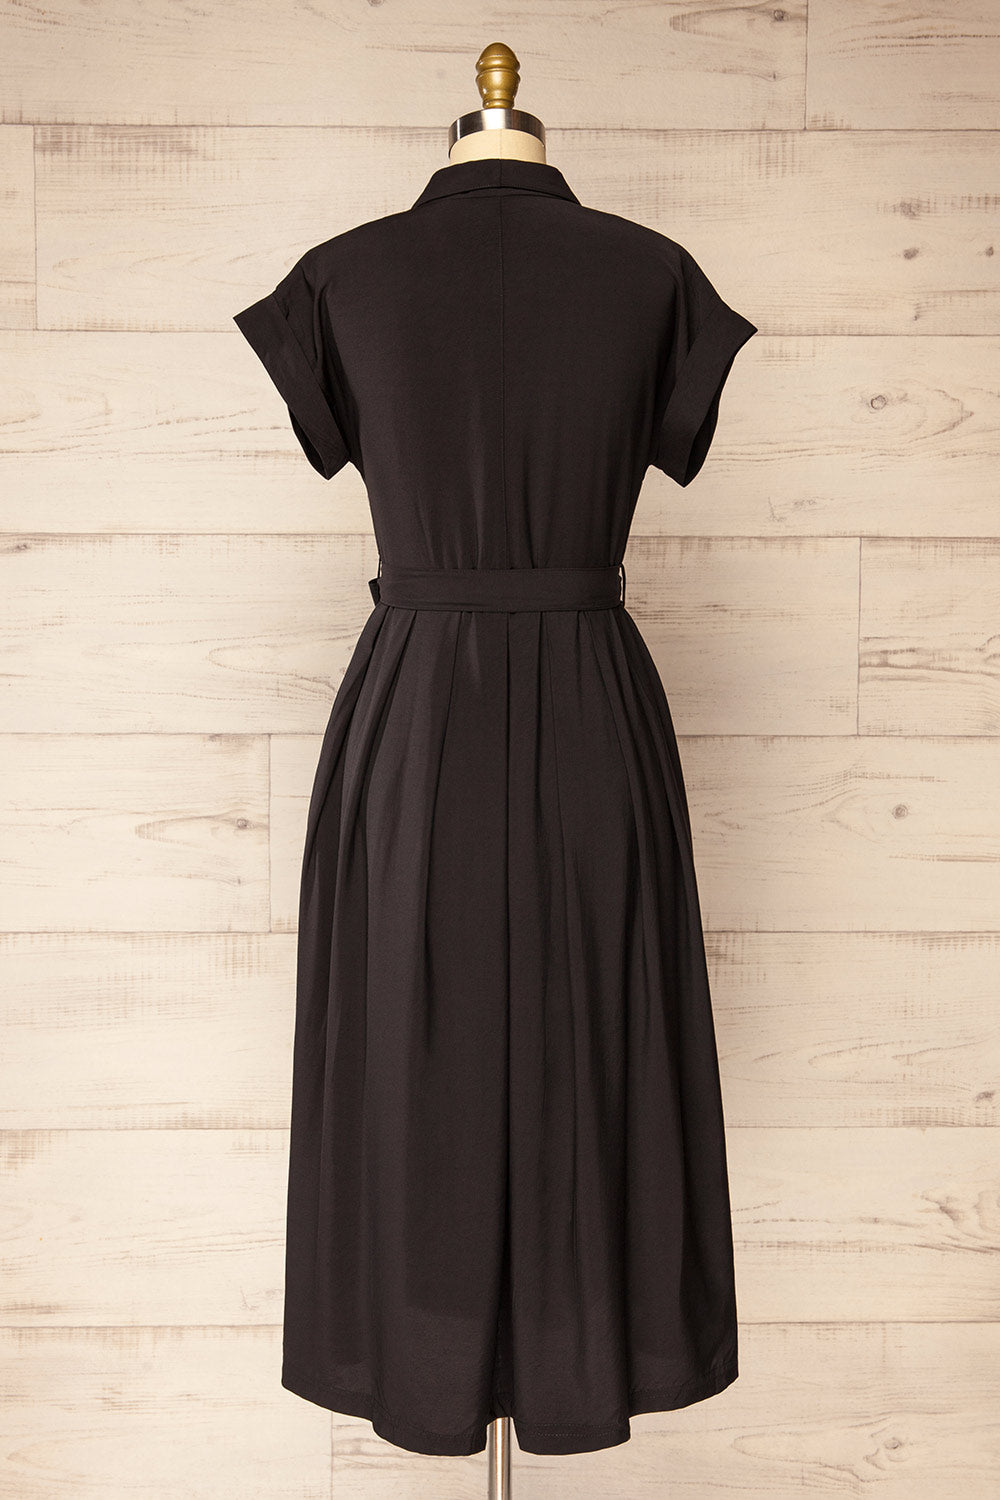 Waverly Black Double-Breasted Dress w/ Tie Belt | La petite garçonne back view